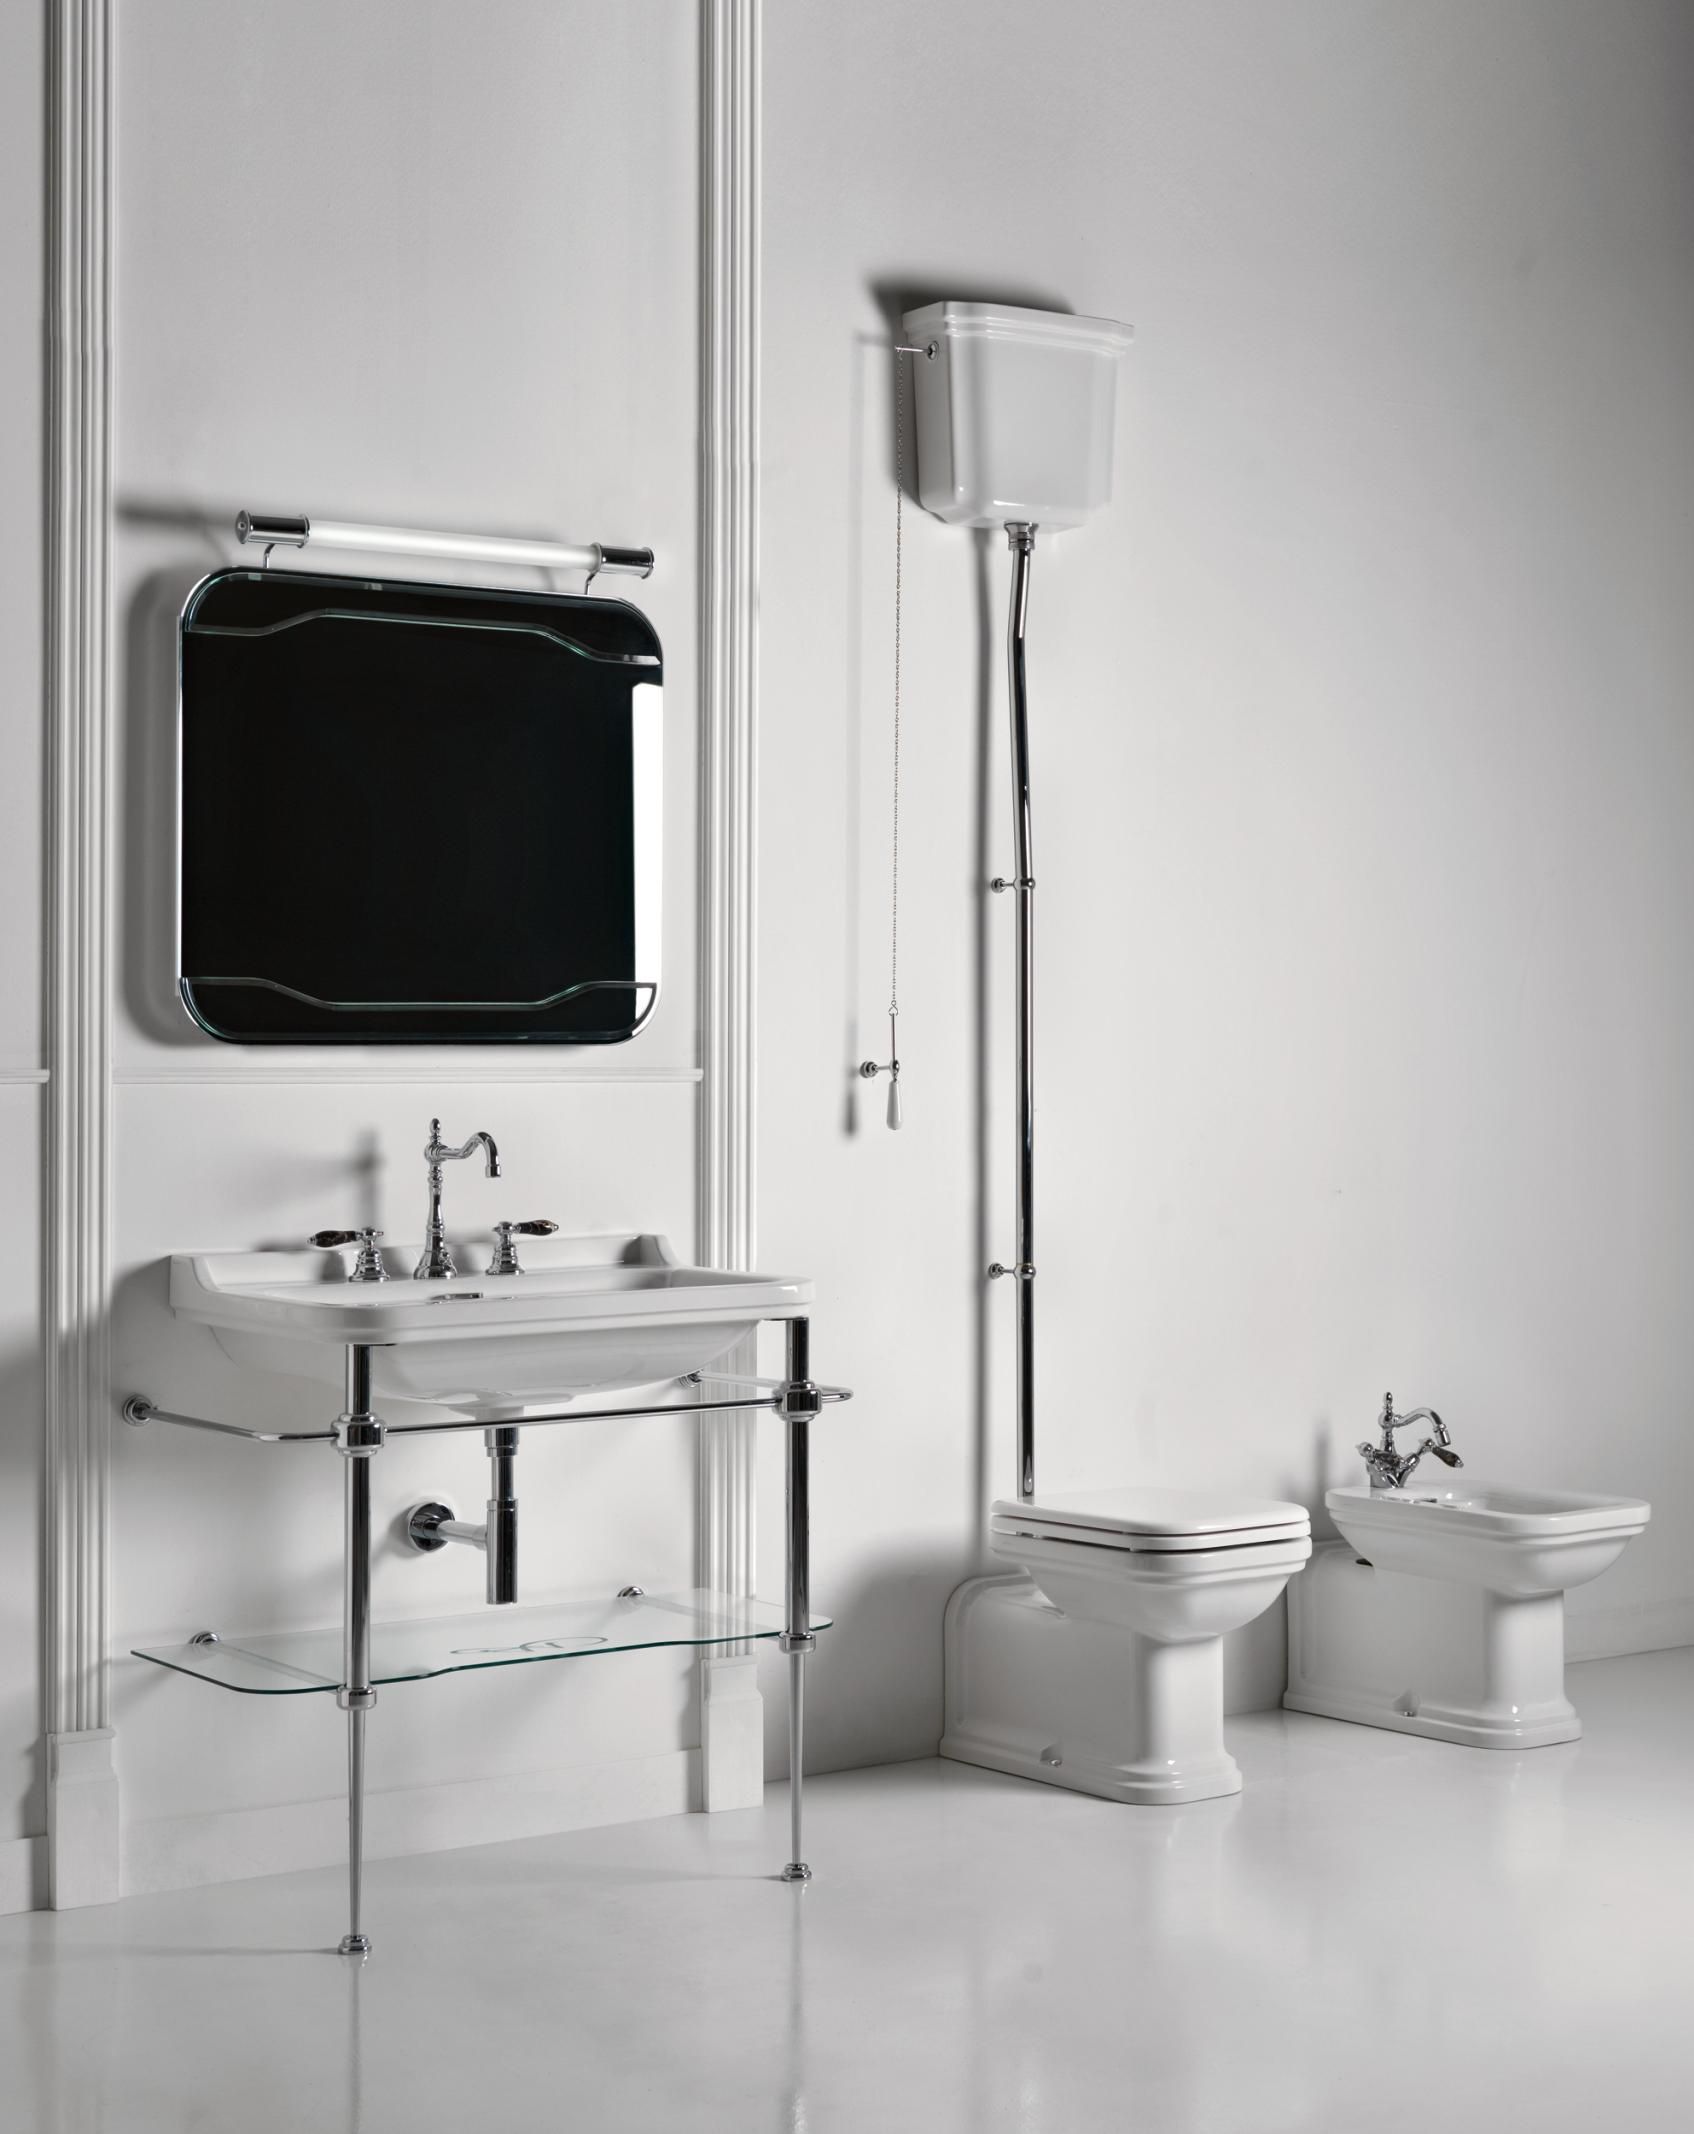 Kerasan Waldorf umywalka muszla klozetowa lazienka retro miska toaletowa WC bidet lazienka retro aranzacje inspiracje porady zdjecia dekoportal